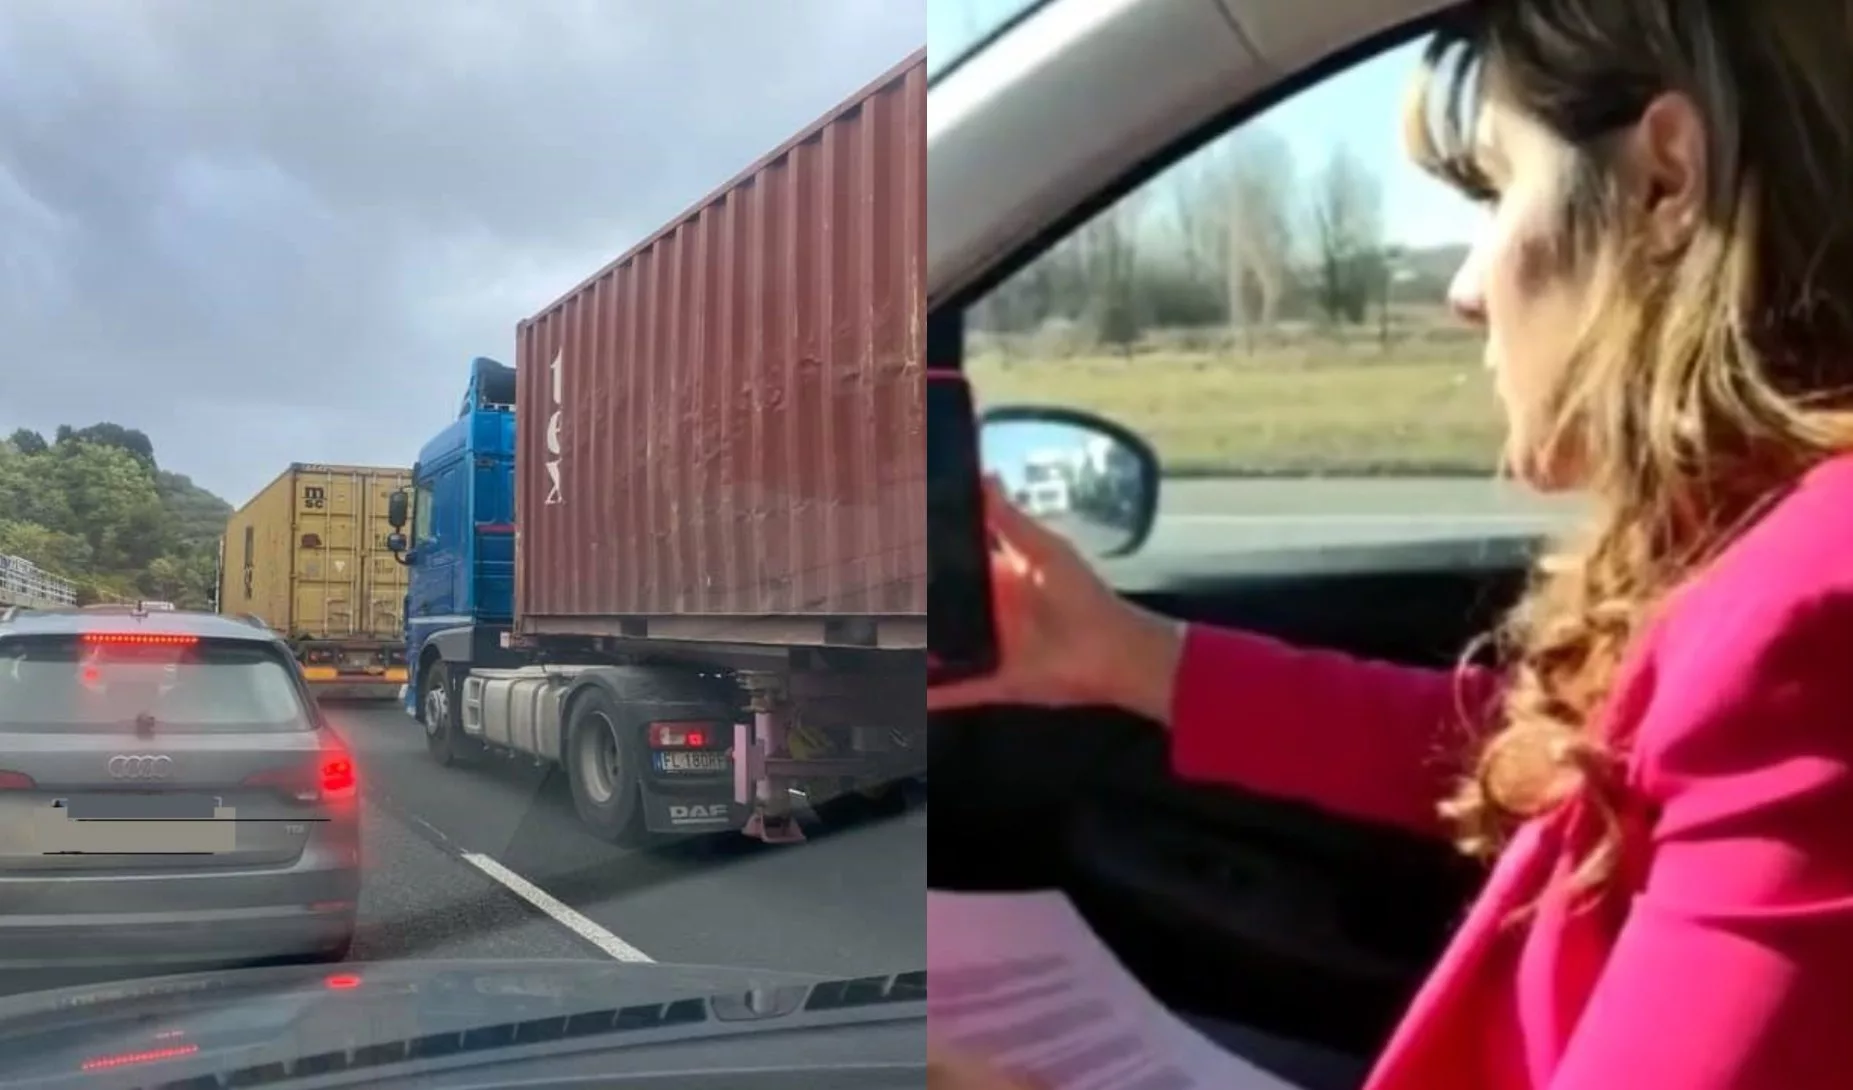 Resta bloccata per ore in autostrada a causa di un maxi tamponamento: una studentessa si laurea in auto